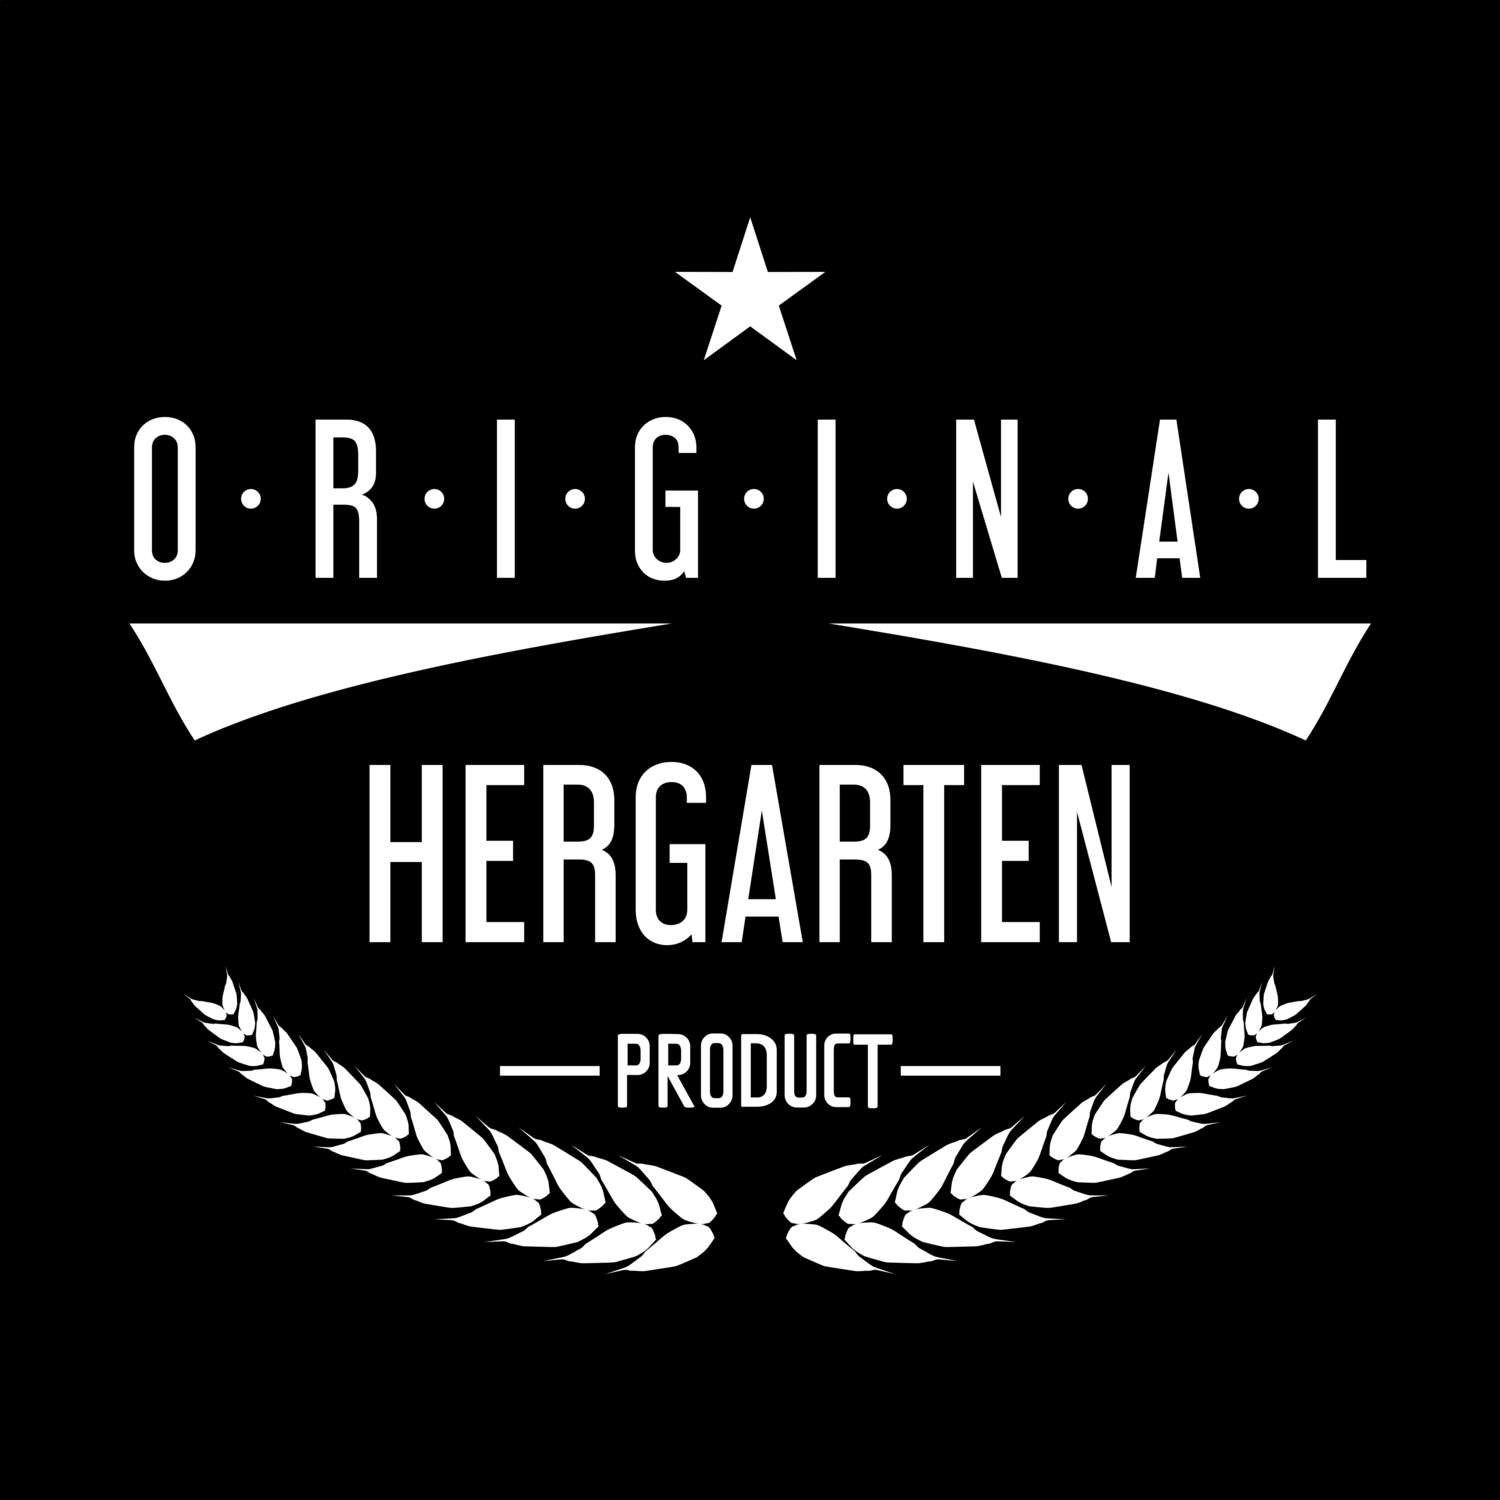 Hergarten T-Shirt »Original Product«